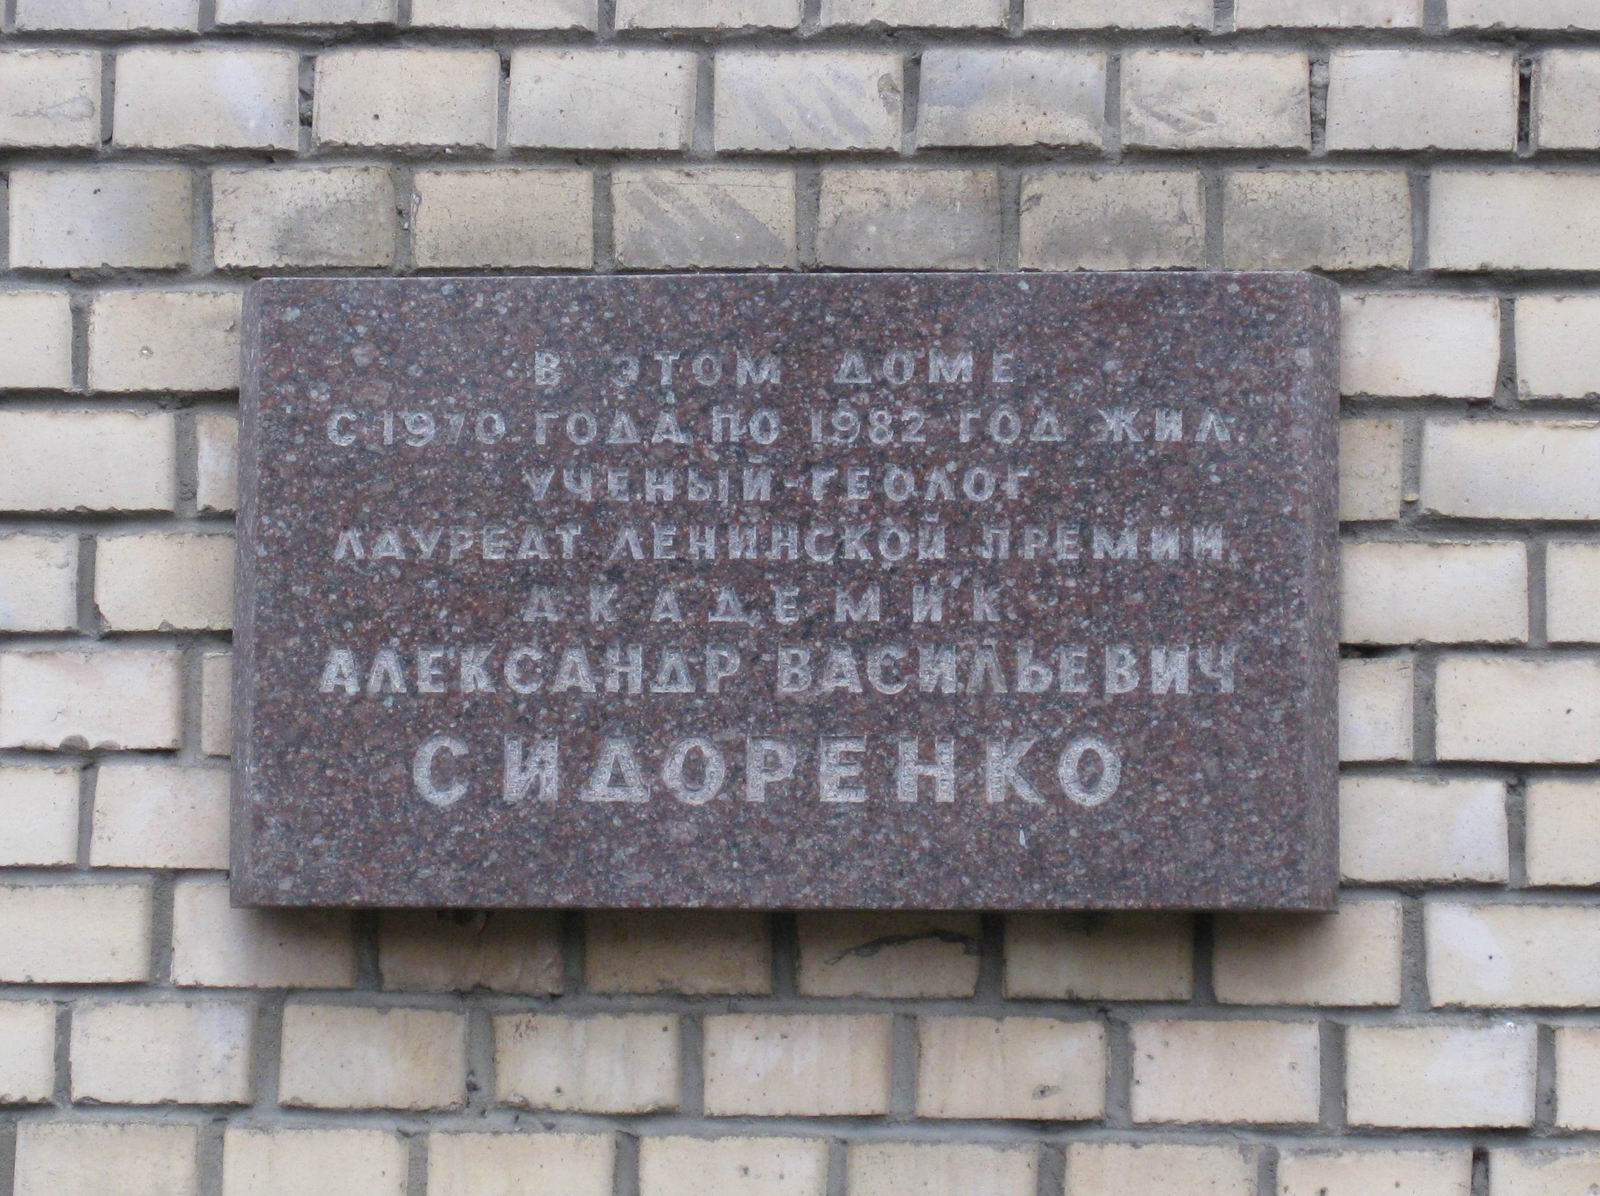 Мемориальная доска Сидоренко А.В. (1917–1982), арх. Ю.Э.Исаев, в переулке Хользунова, дом 10, открыта 8.6.1983.